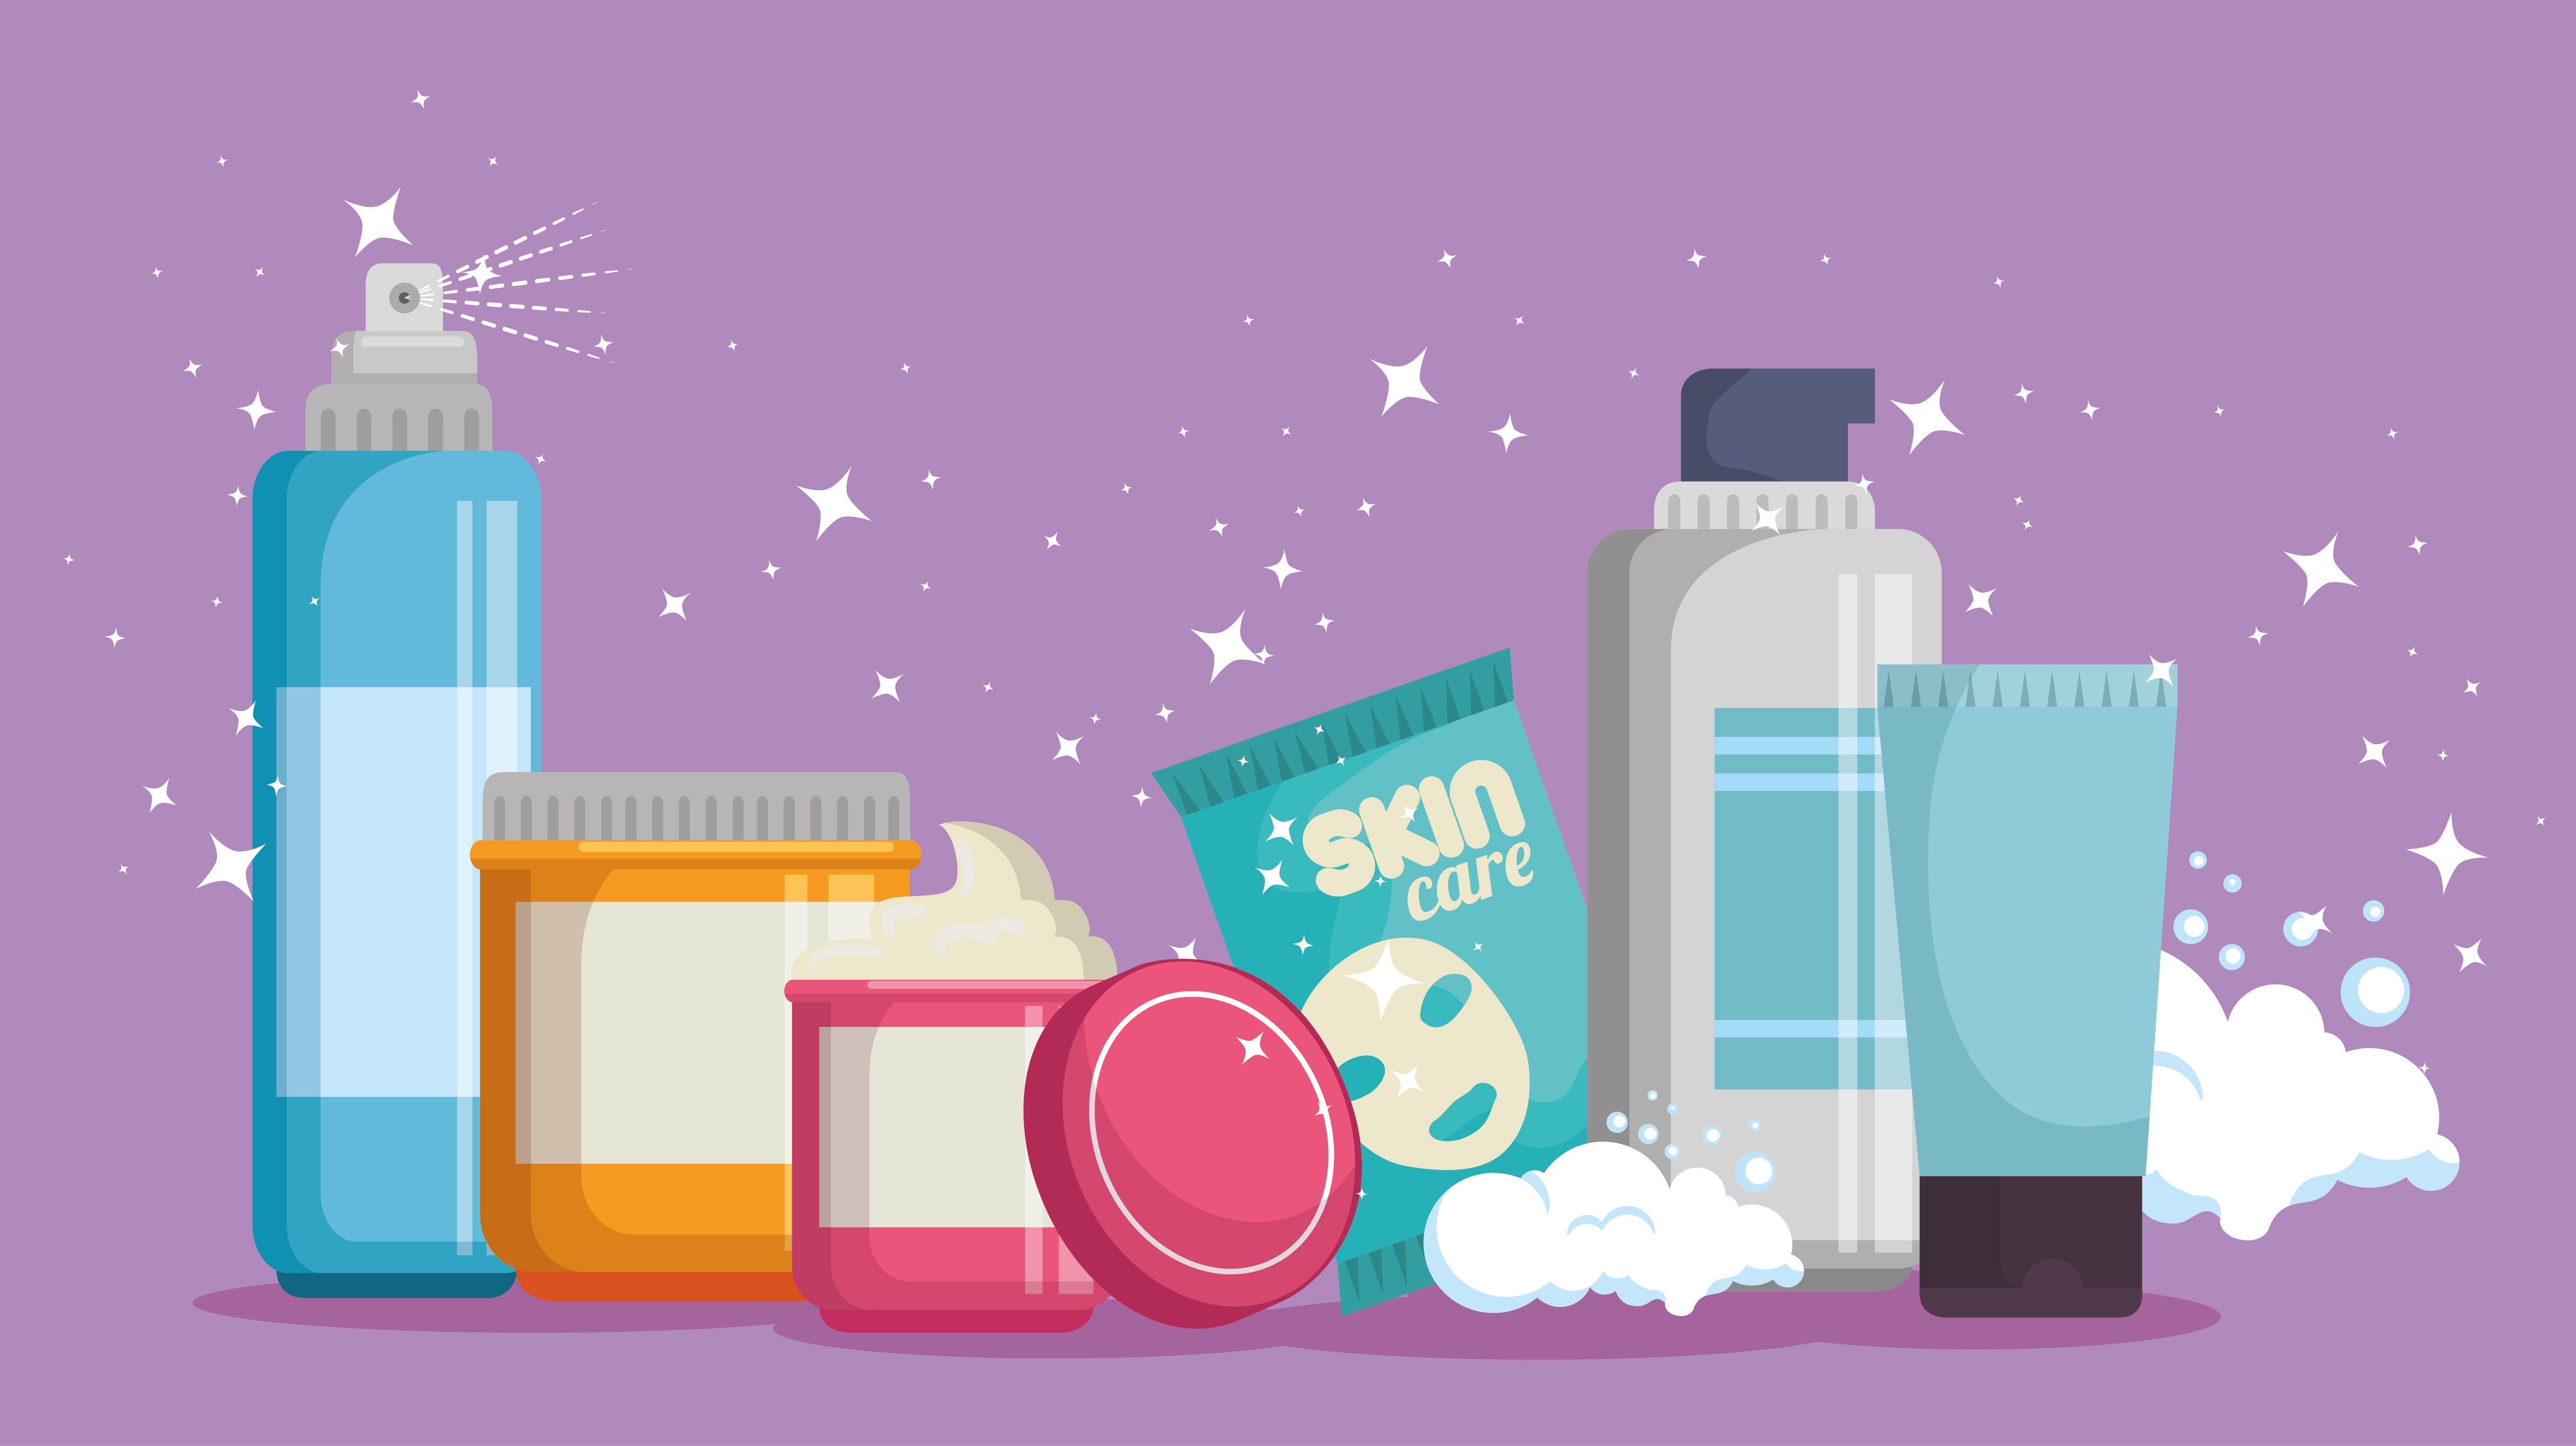 Como vender maquiagem: ilustração com potes e embalagens de produtos de beleza